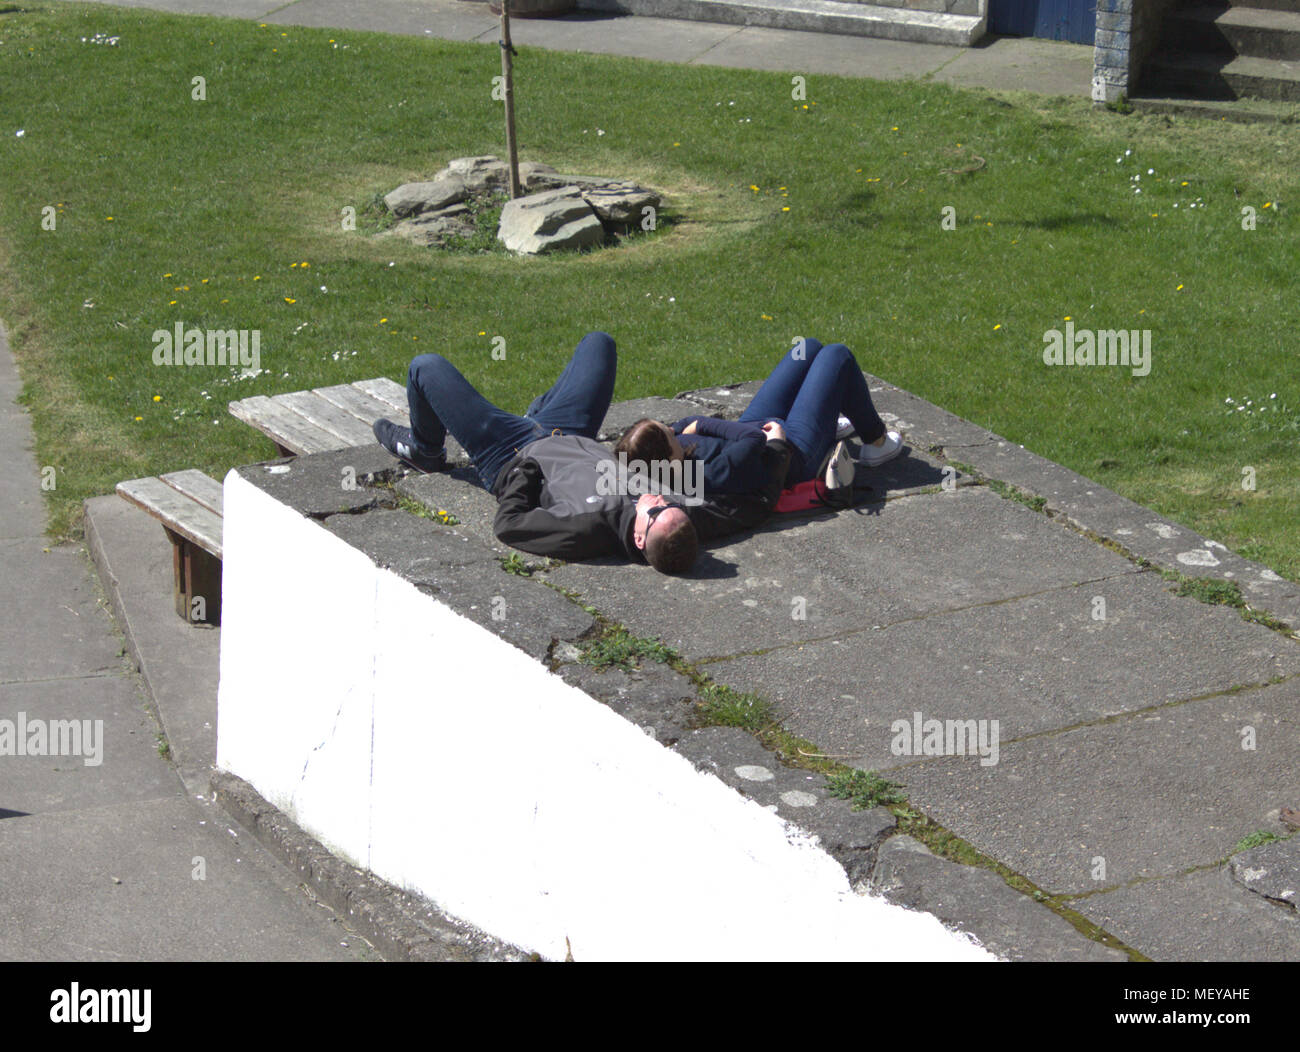 Pareja de mediana edad acostado, dormido en el suelo disfrutando del sol de primavera. Foto de stock